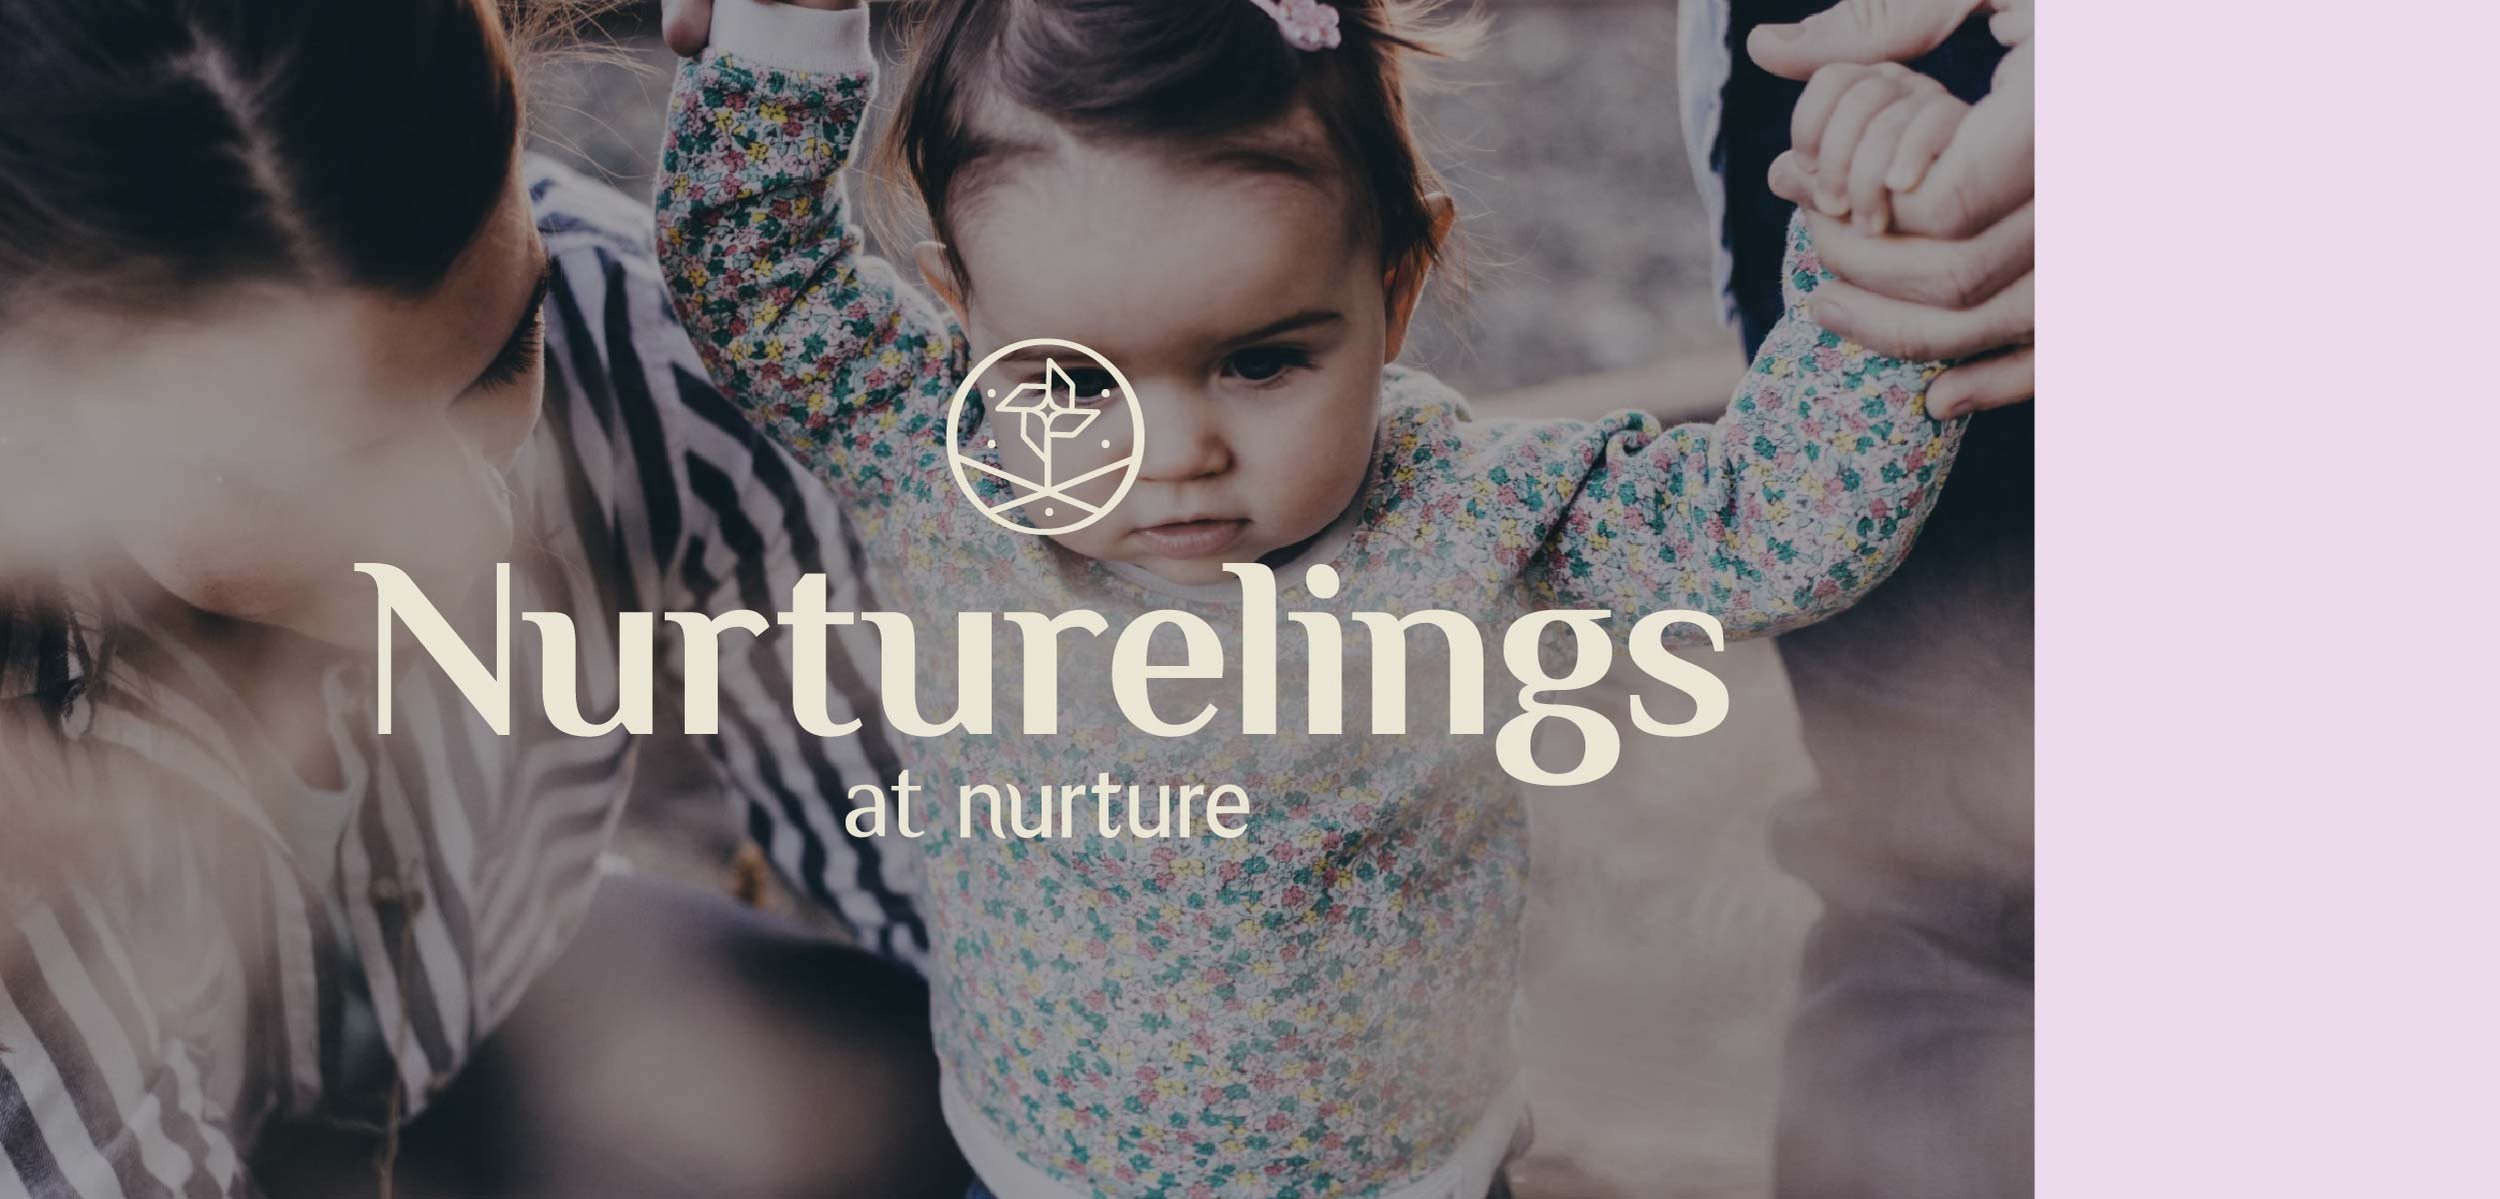 Vicarel-Studios-Nurture-wellcare-branding_nurturlings.jpg